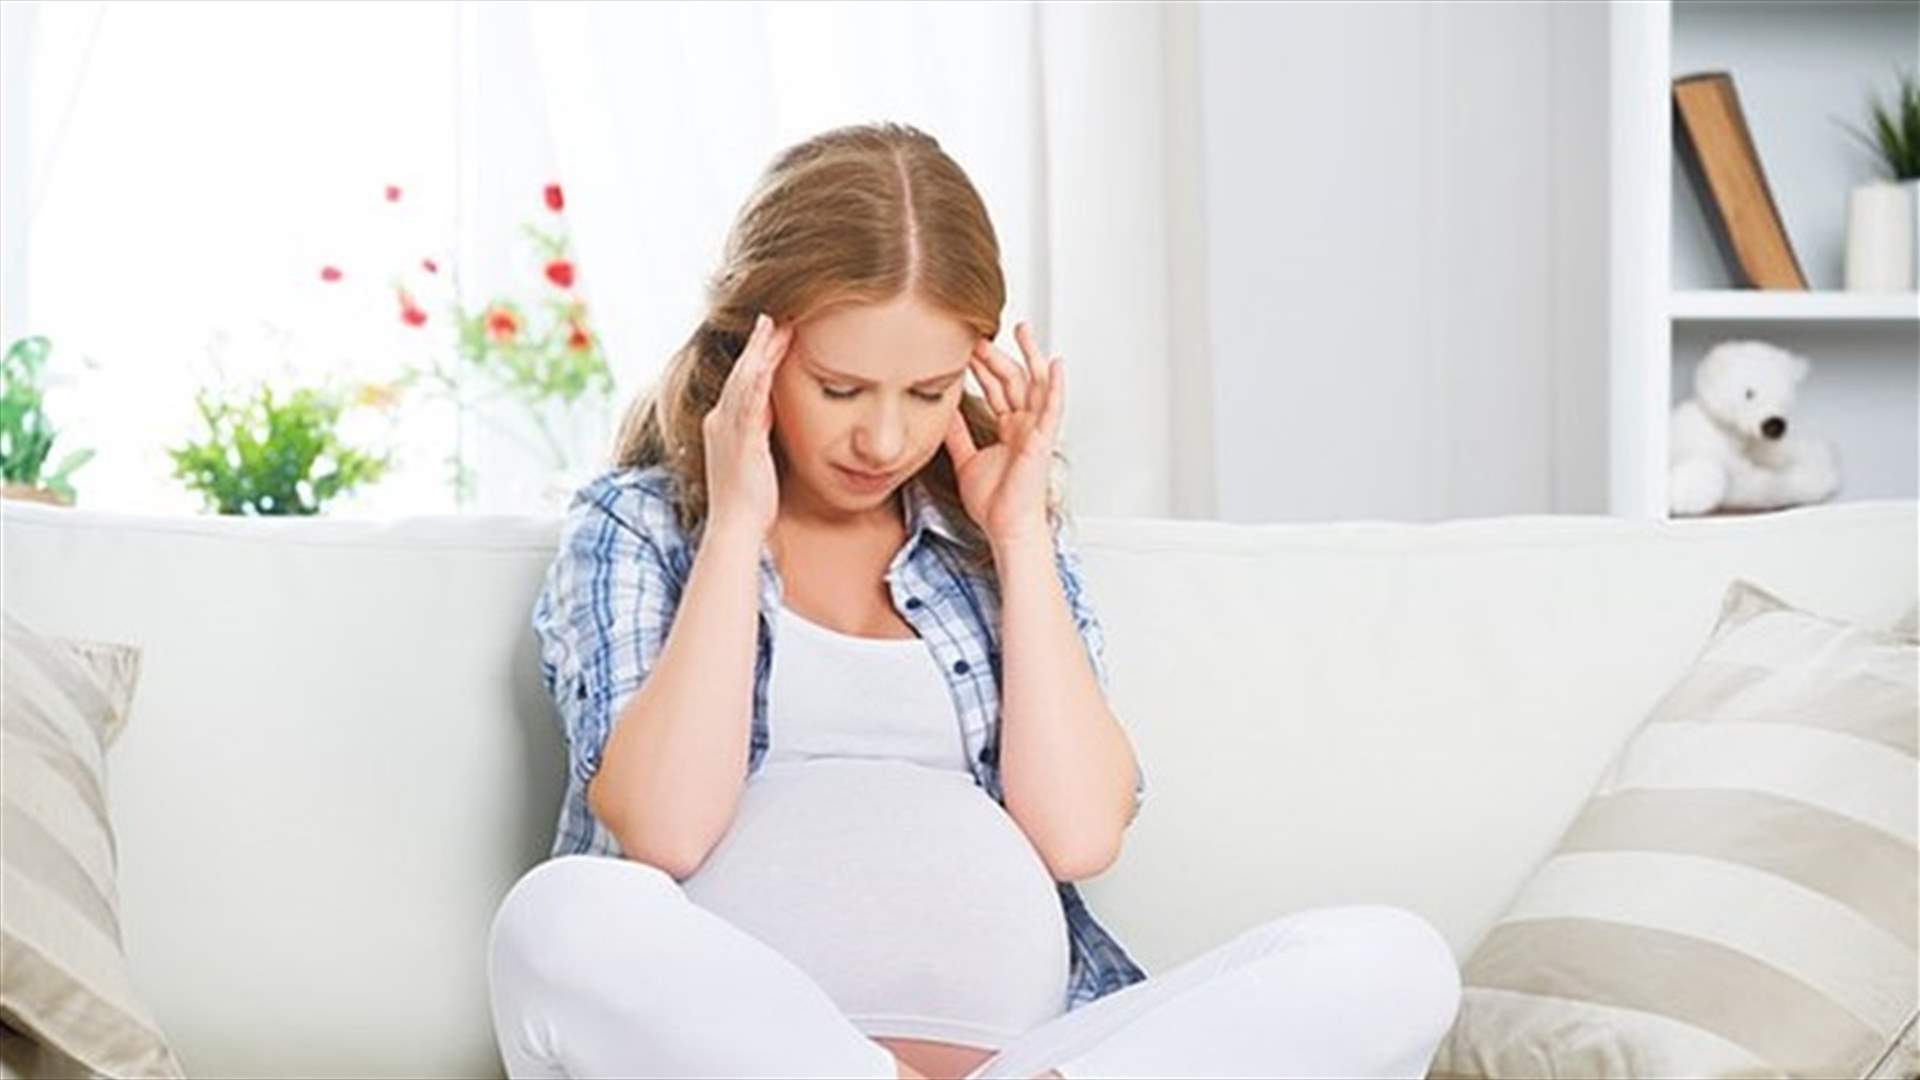 توتر الحمل...آثار سلبية على دماغ الأطفال ومشاكل عاطفية في مرحلة الطفولة